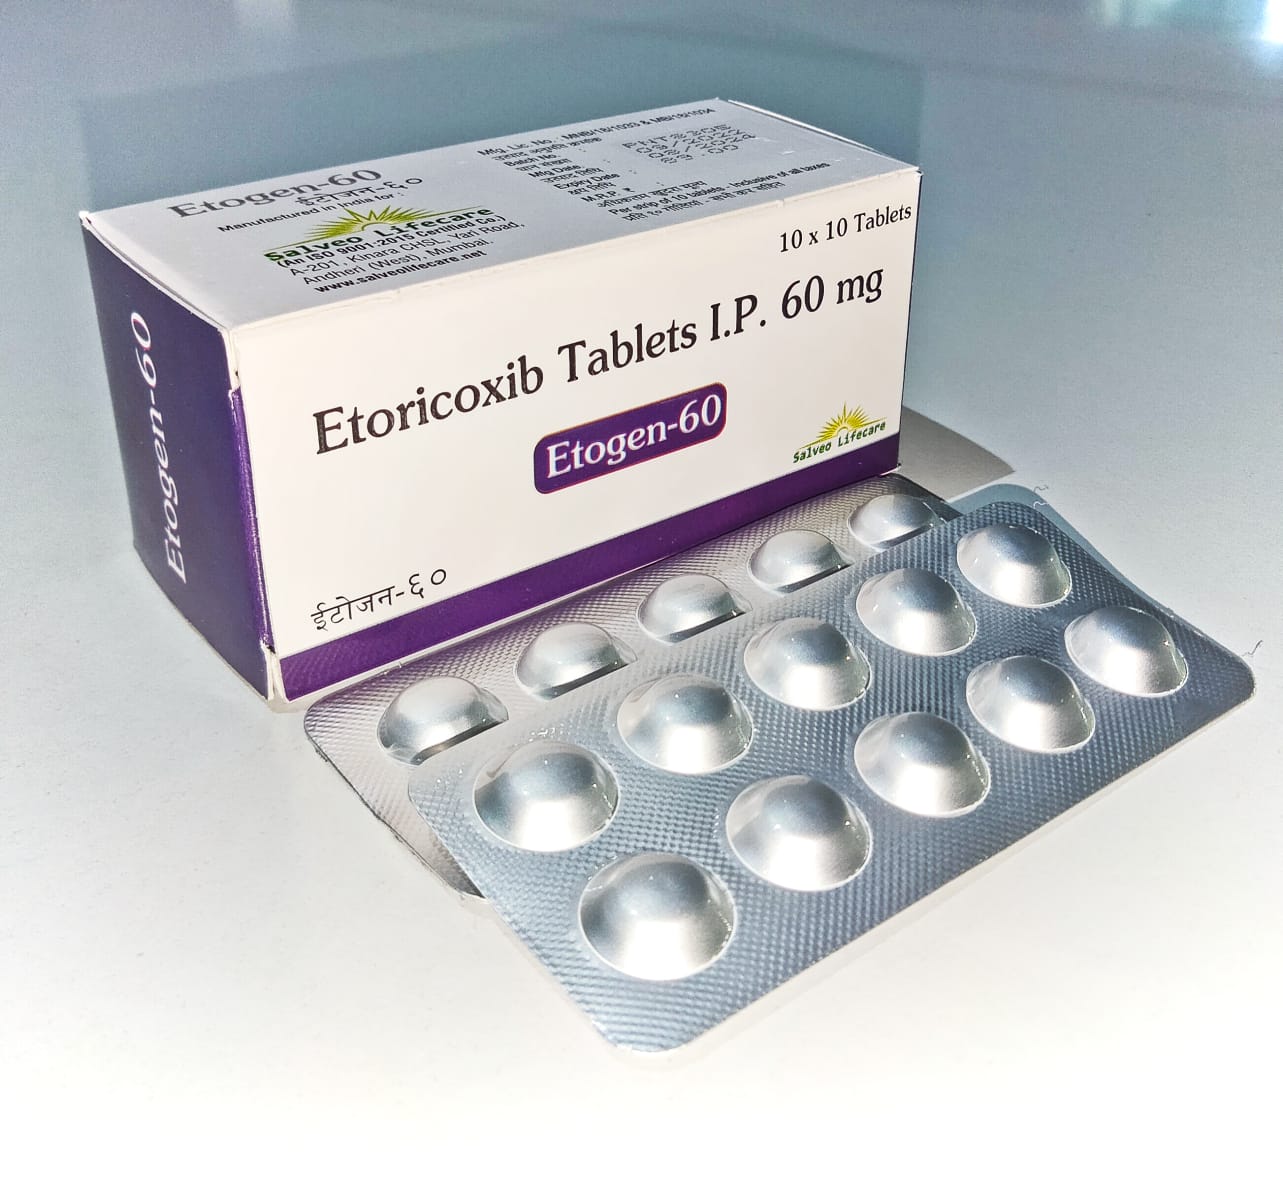 etoricoxib-60 mg